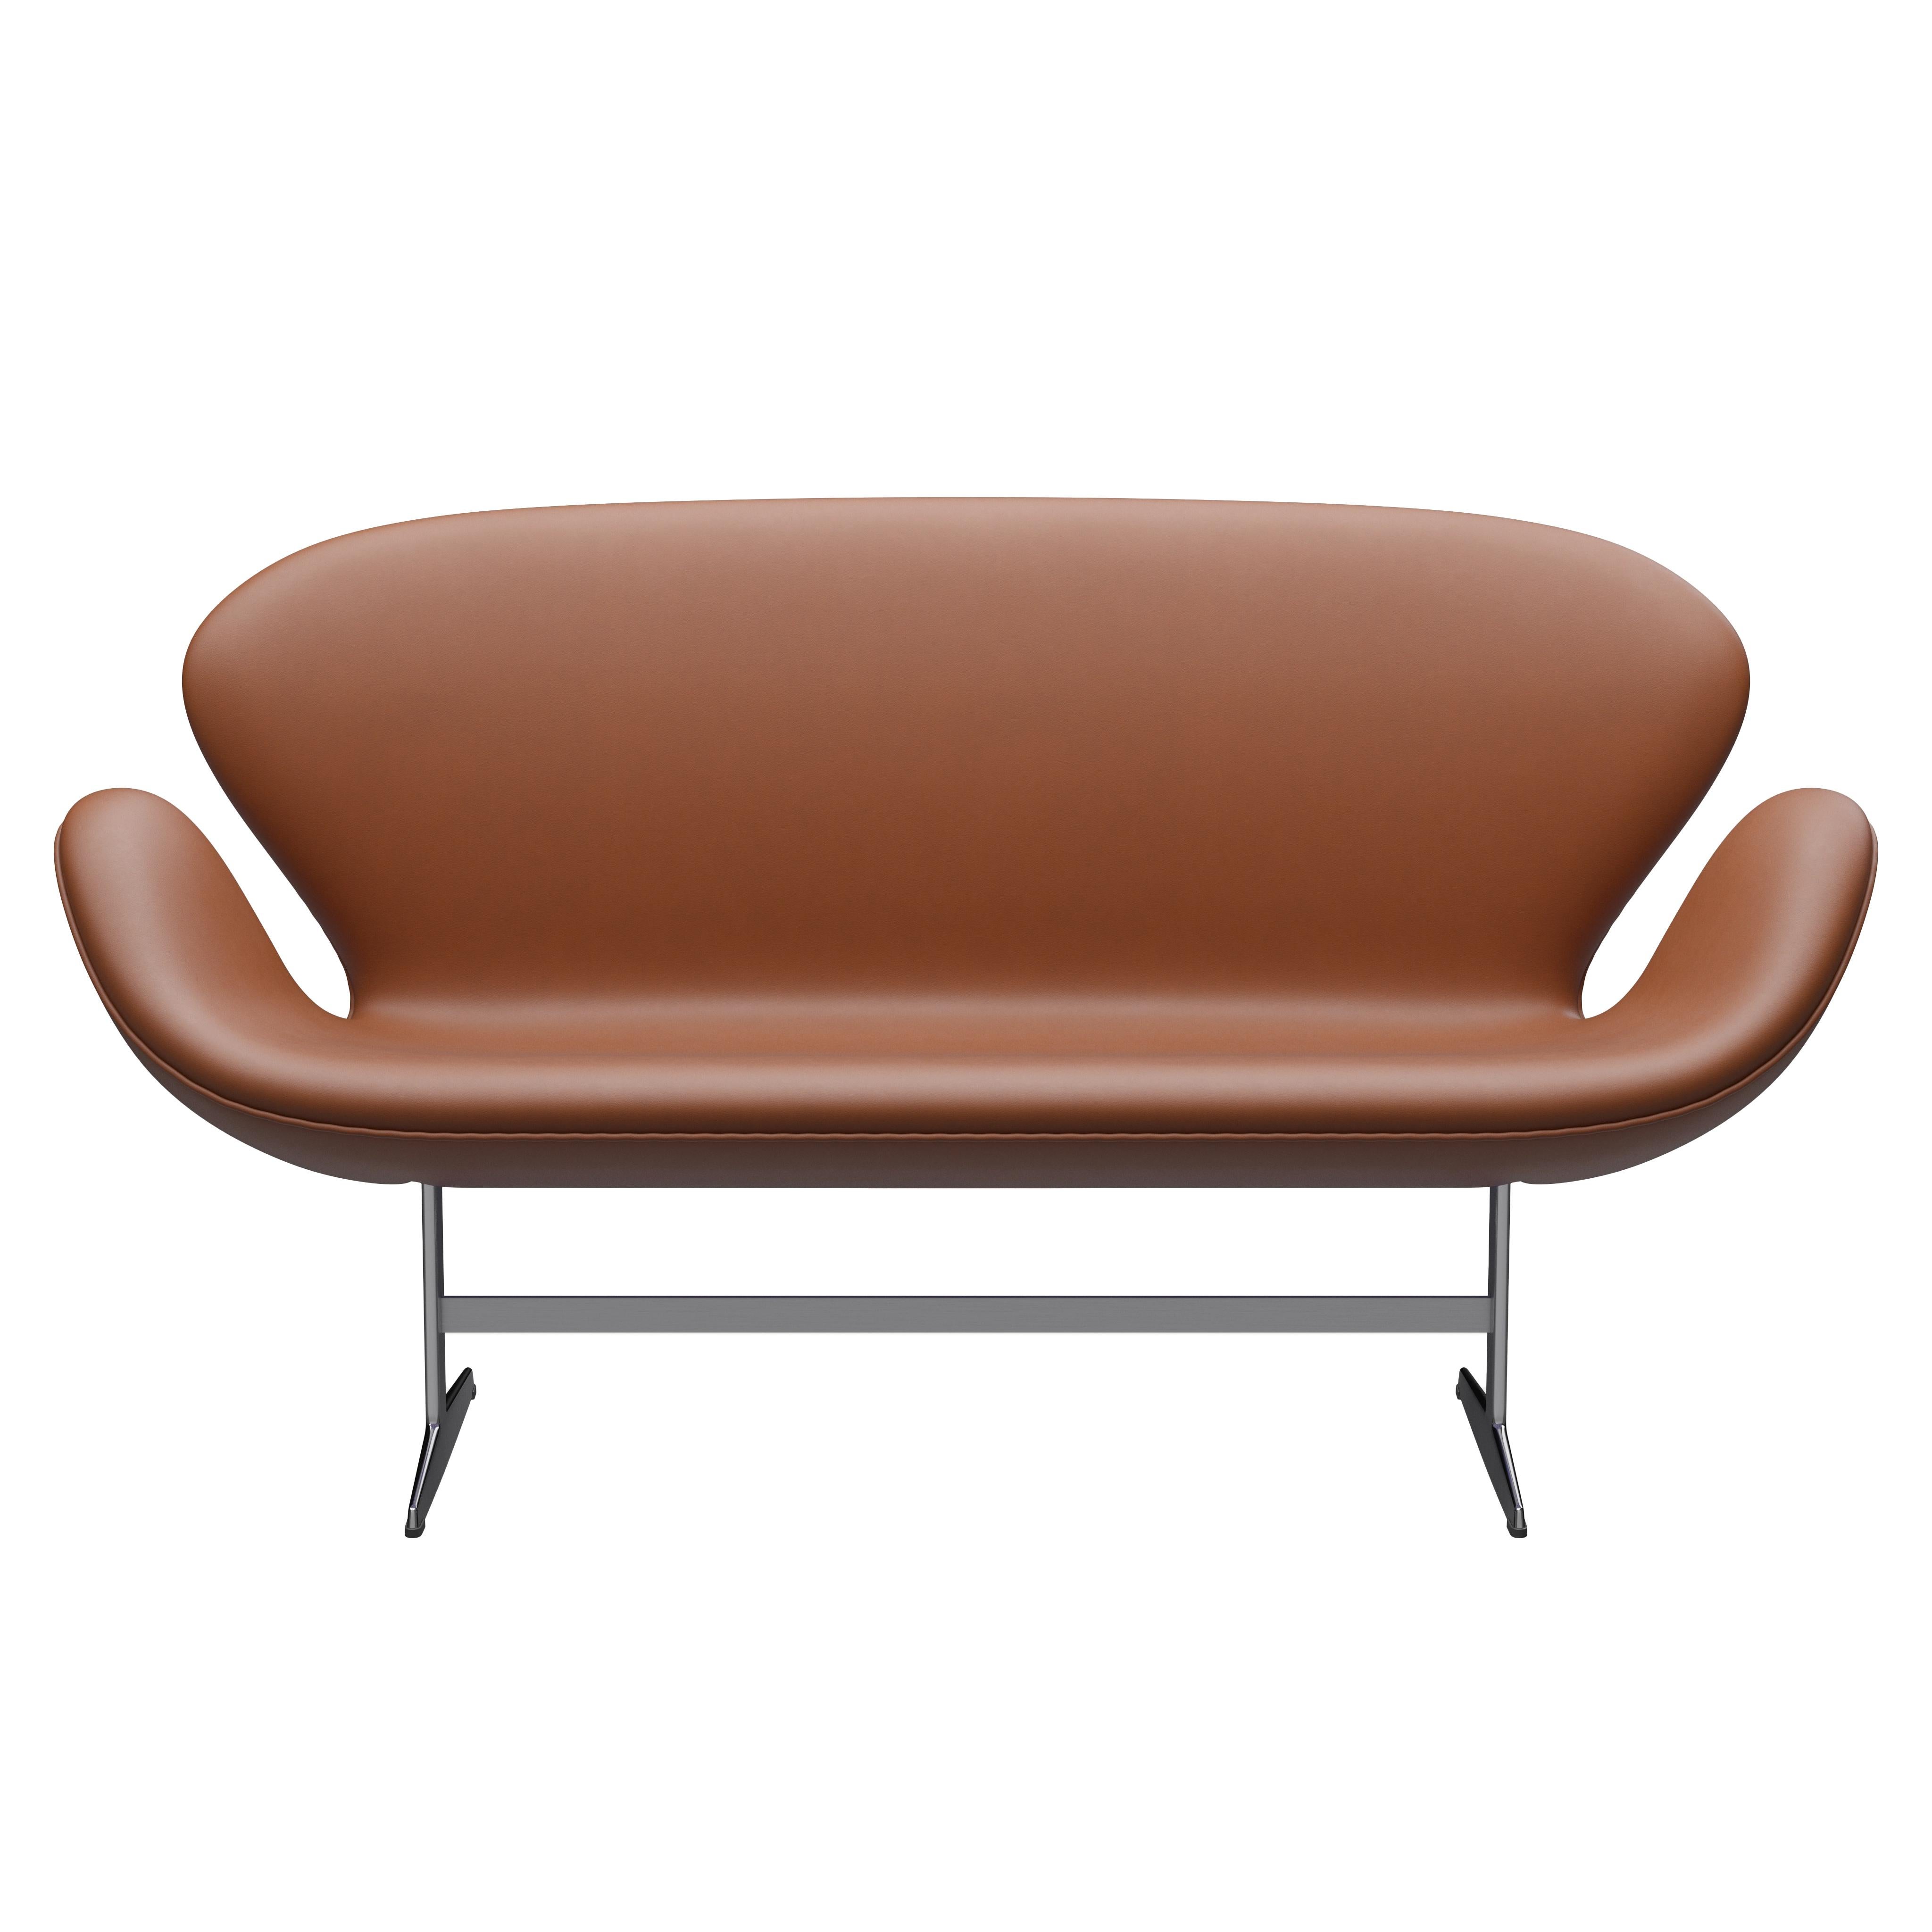 Arne Jacobsen 'Swan' Sofa for Fritz Hansen in Leather Upholstery (Cat. 3) For Sale 5